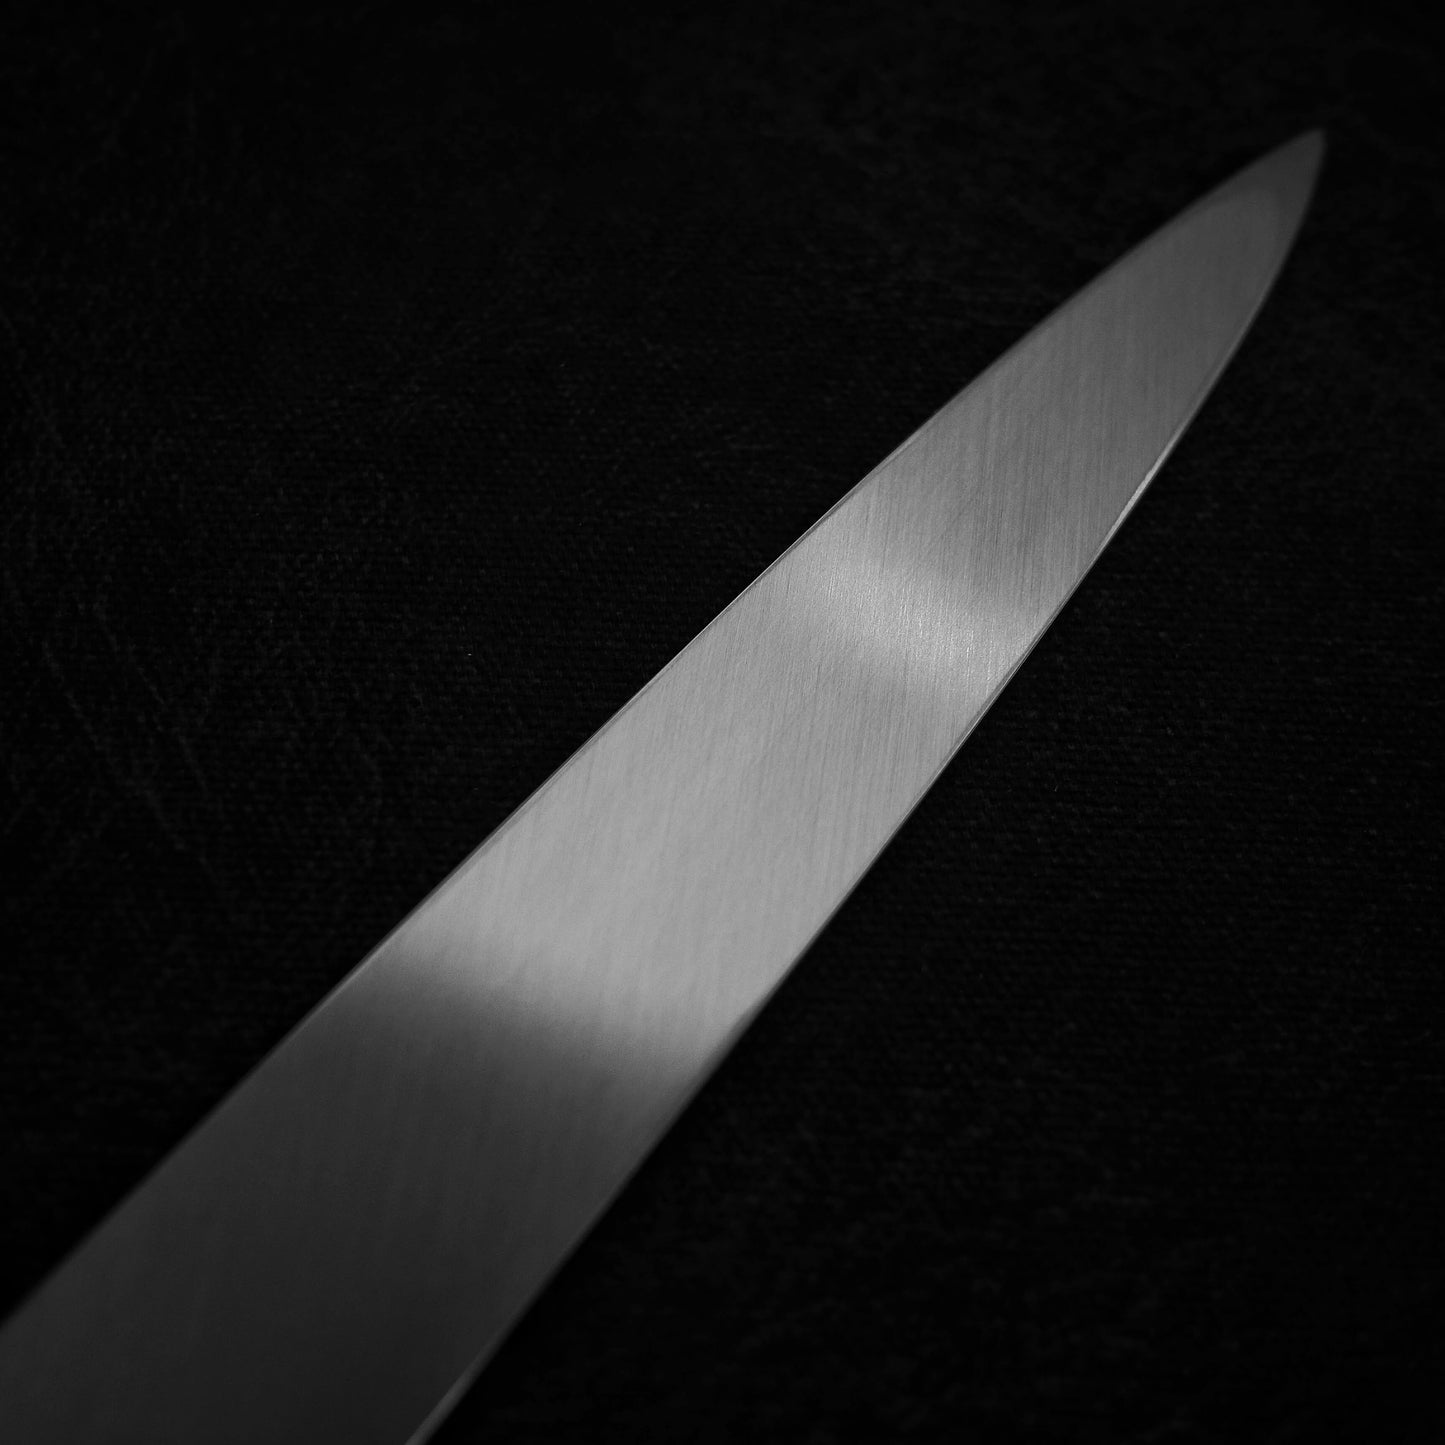 Ittosai Kotetsu Gokujyo honkasumi aogami #2 yanagiba 300mm - Zahocho Japanese Knives